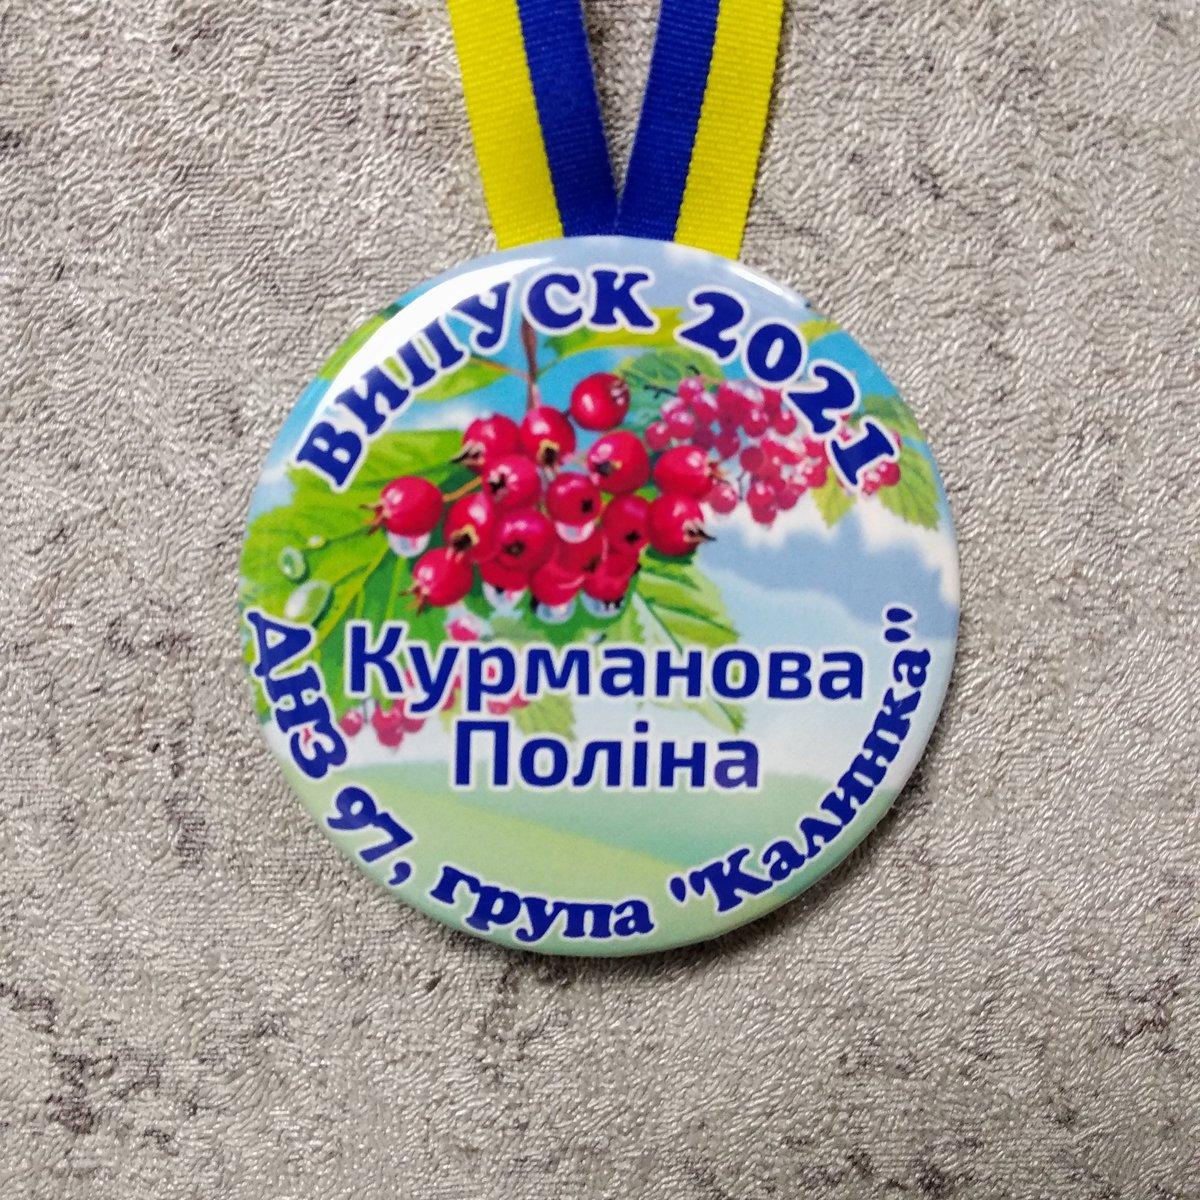 Медалі для випускників дитячого садочку "Калинка", фото 1